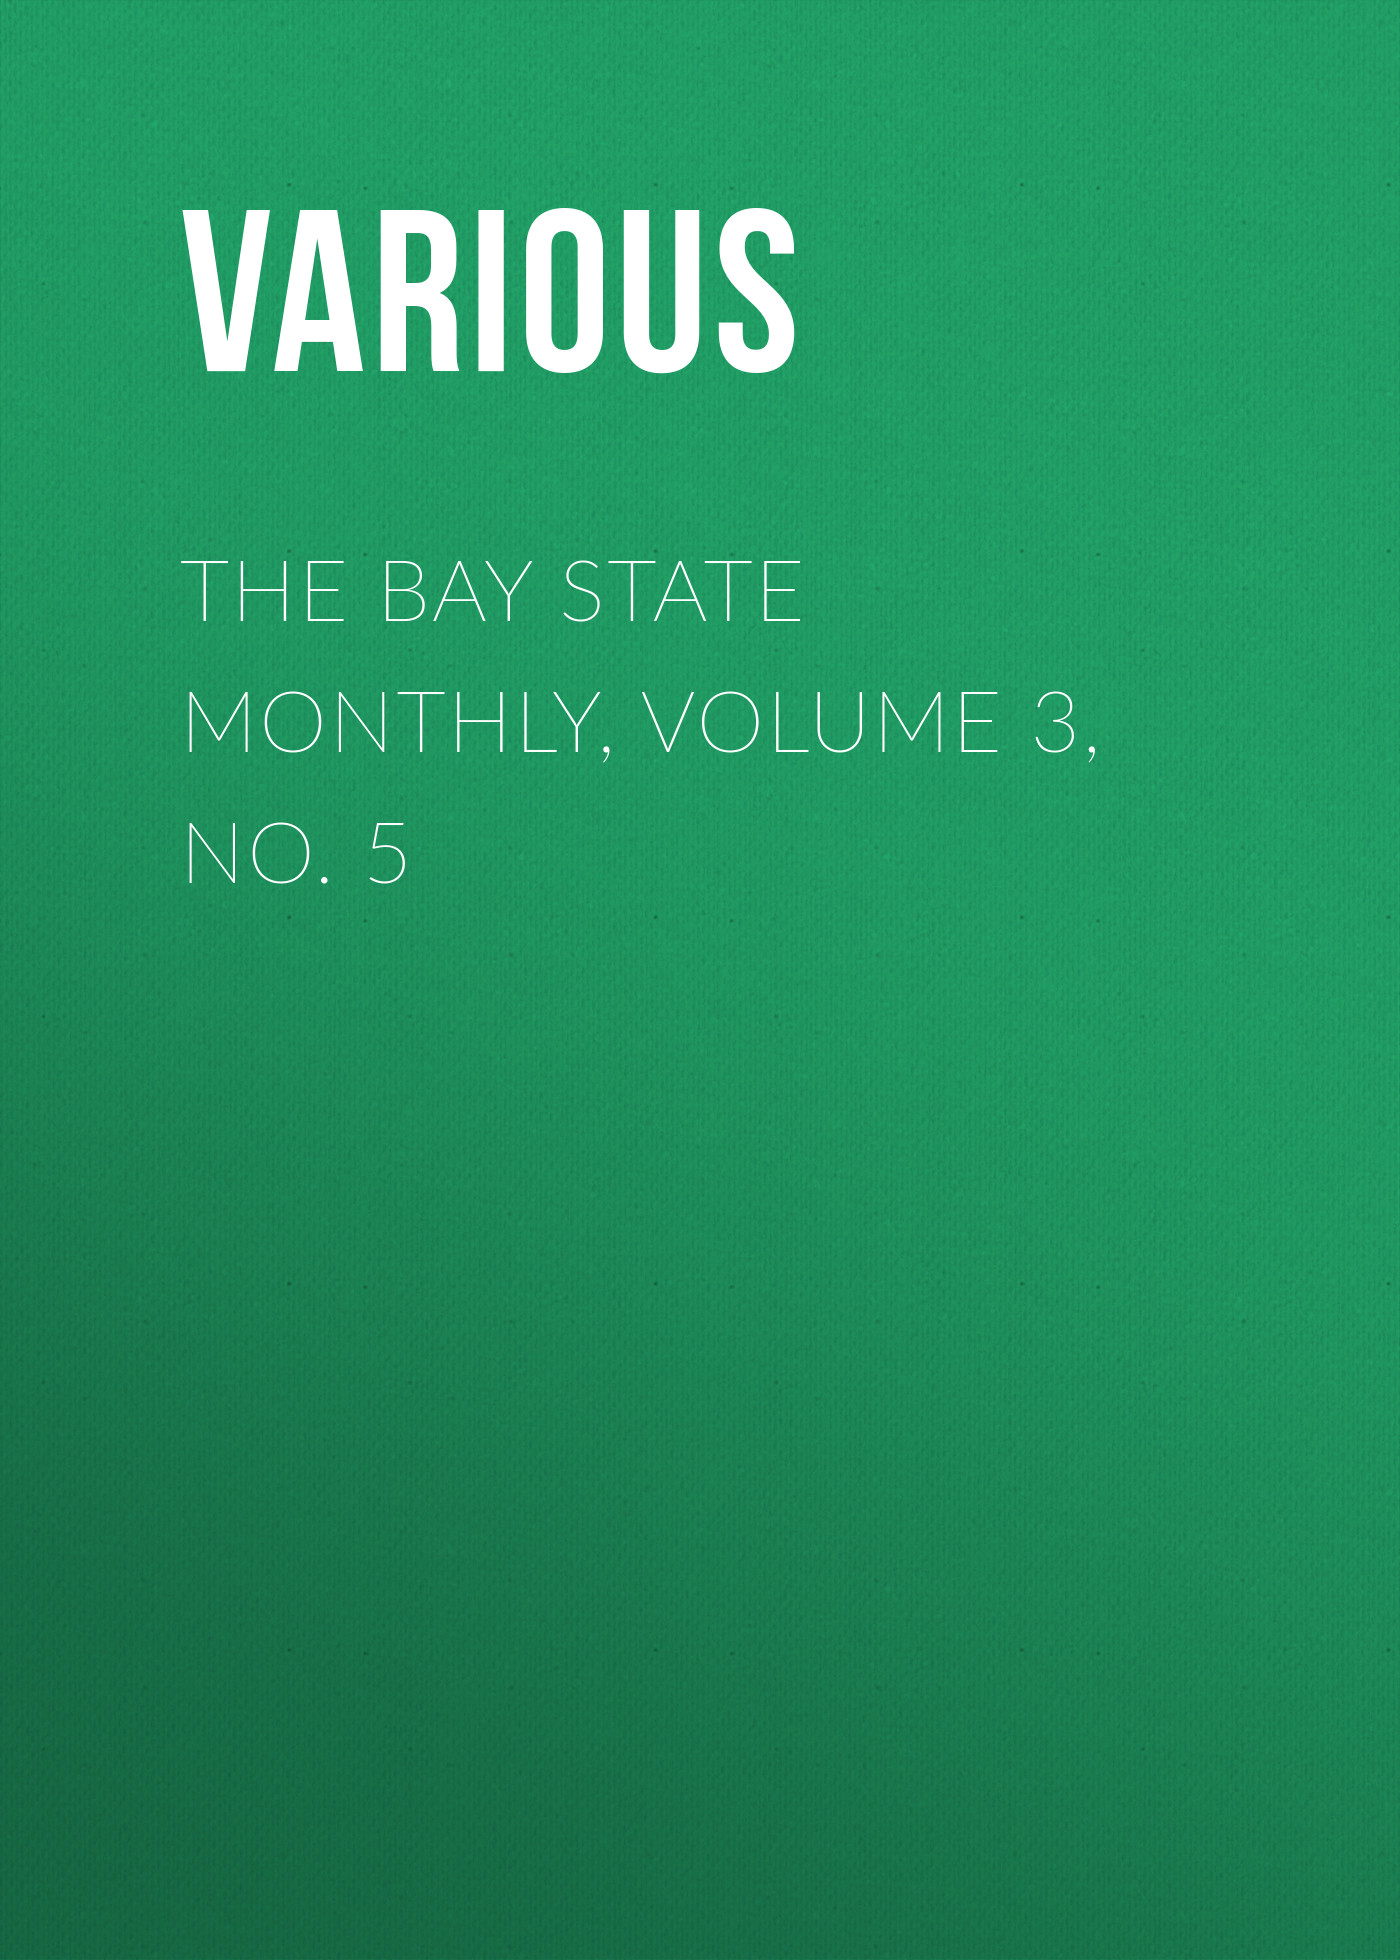 Книга The Bay State Monthly, Volume 3, No. 5 из серии , созданная  Various, может относится к жанру Зарубежная старинная литература, Журналы, Зарубежная образовательная литература. Стоимость электронной книги The Bay State Monthly, Volume 3, No. 5 с идентификатором 35502299 составляет 0 руб.